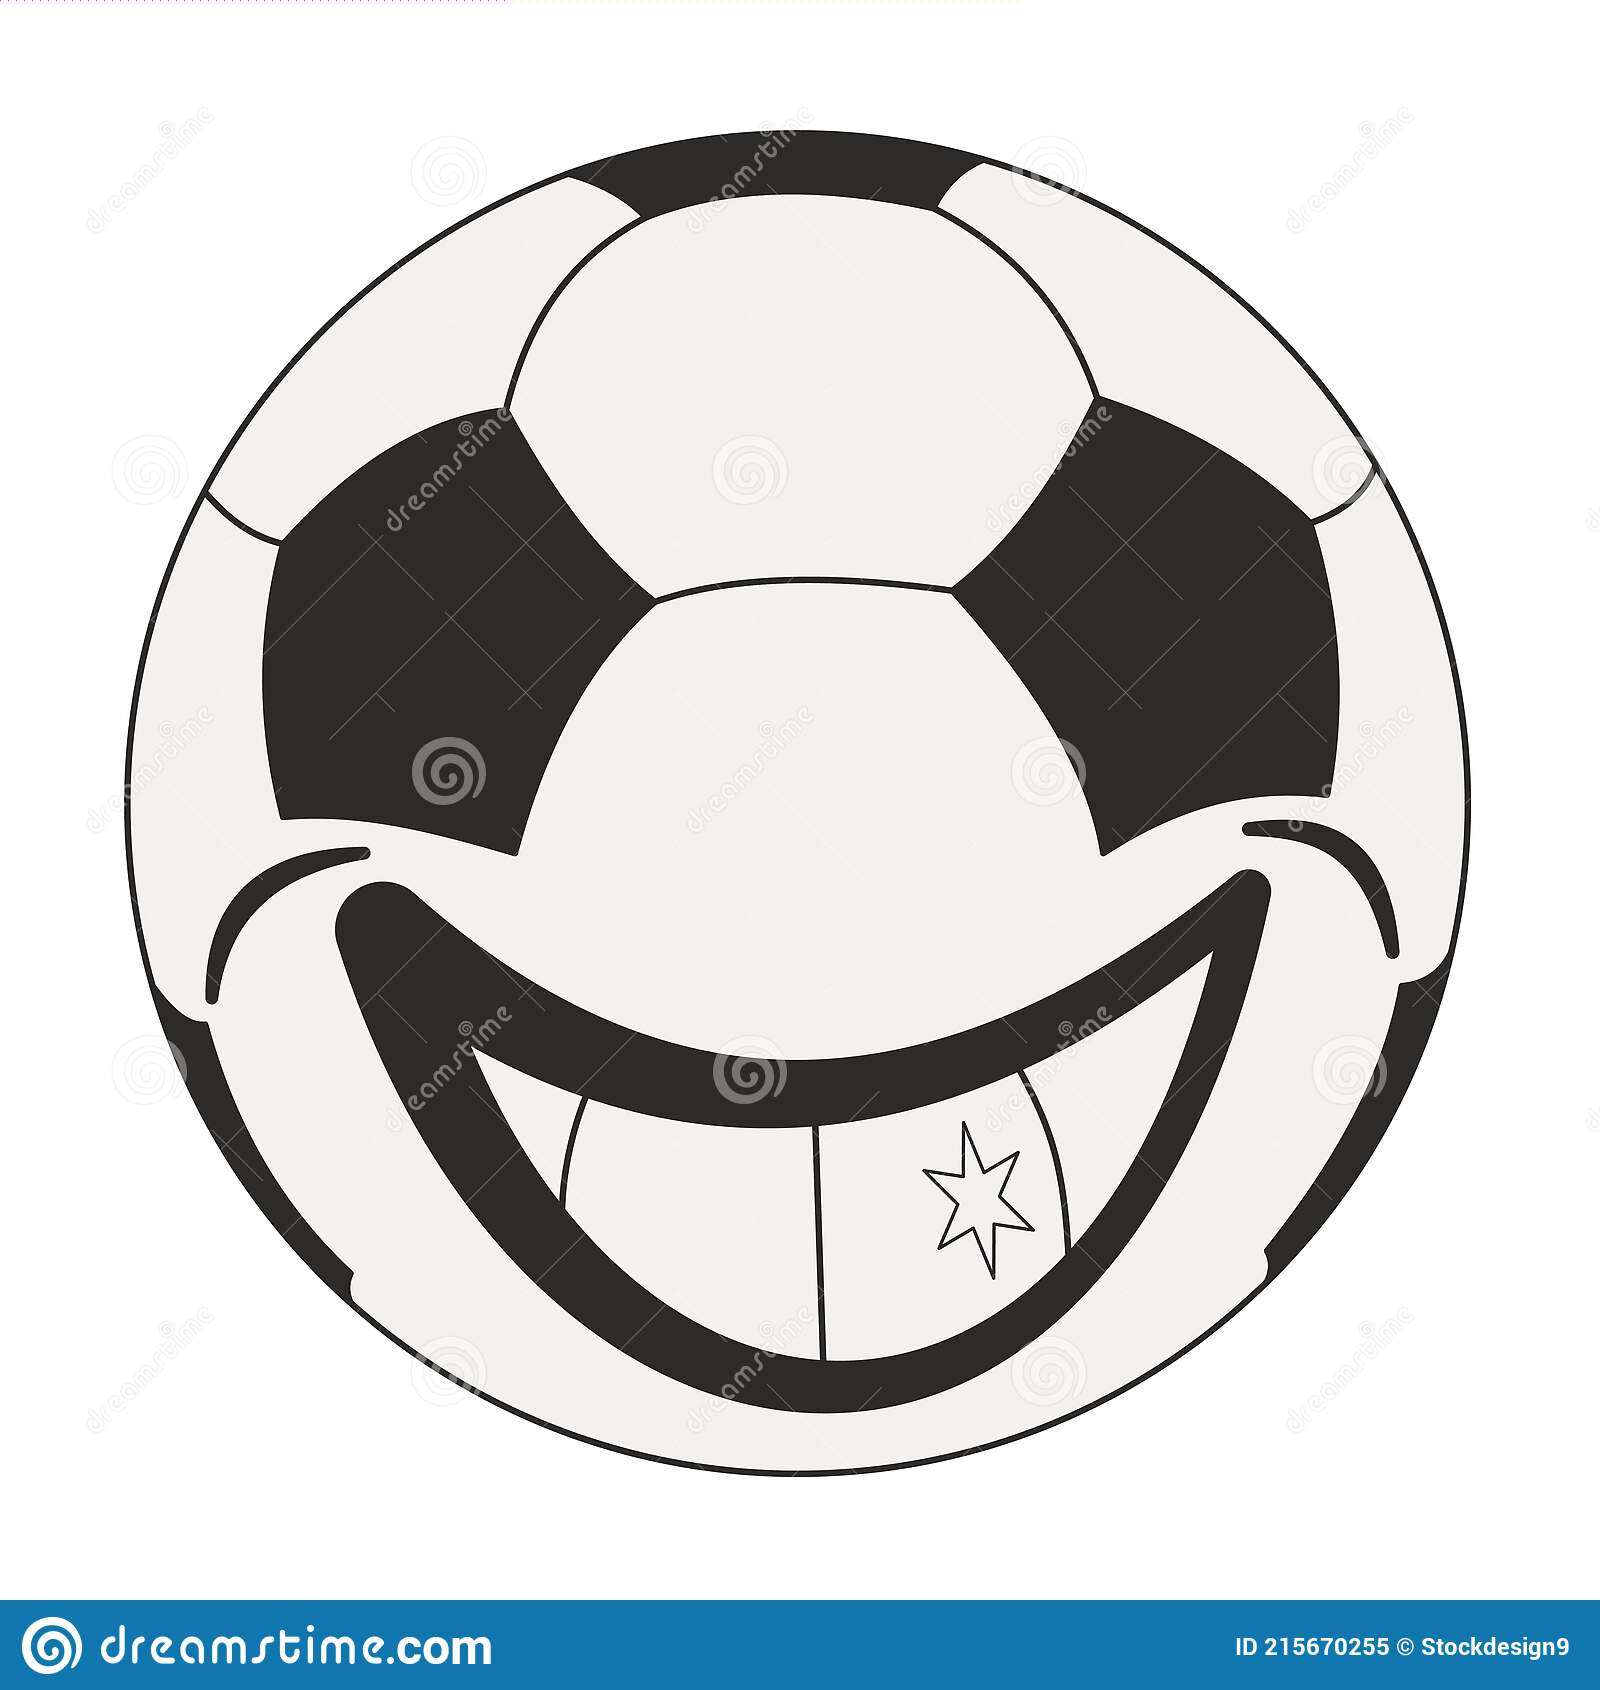 palla-da-calcio-sorridente-icona-del-pinktogramma-di-attrezzatura-sportiva-forma-rotonda-stile-piatto-vettoriale-disegnato-mano-215670255